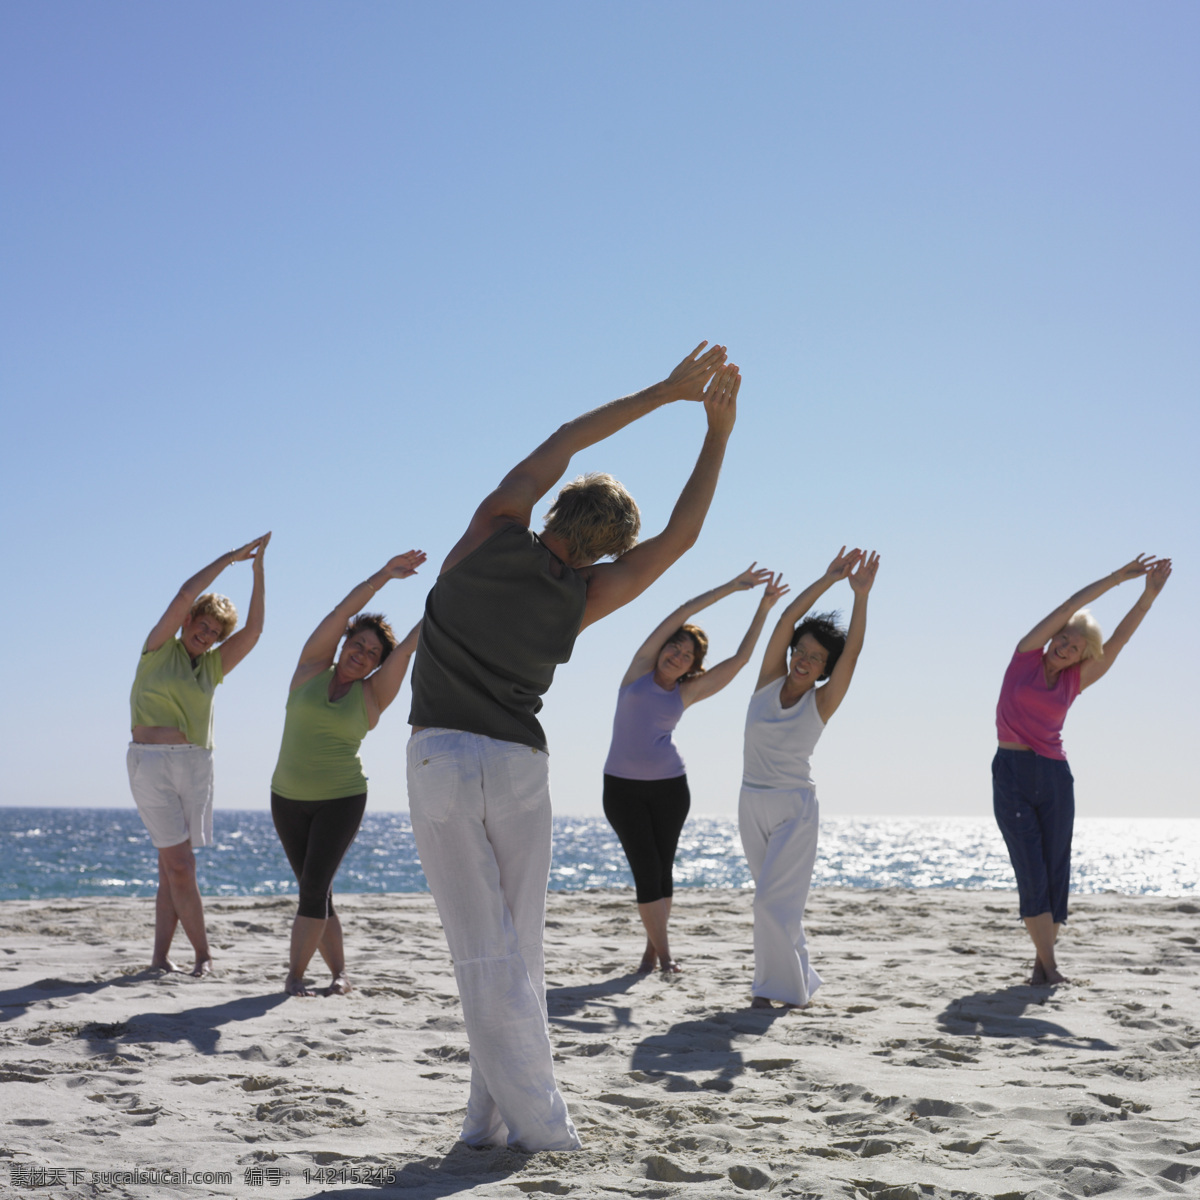 海边 运动 团队 女人 女性 休闲 健身操 沙滩 国外人物 团队精神 生活人物 人物图库 人物图片